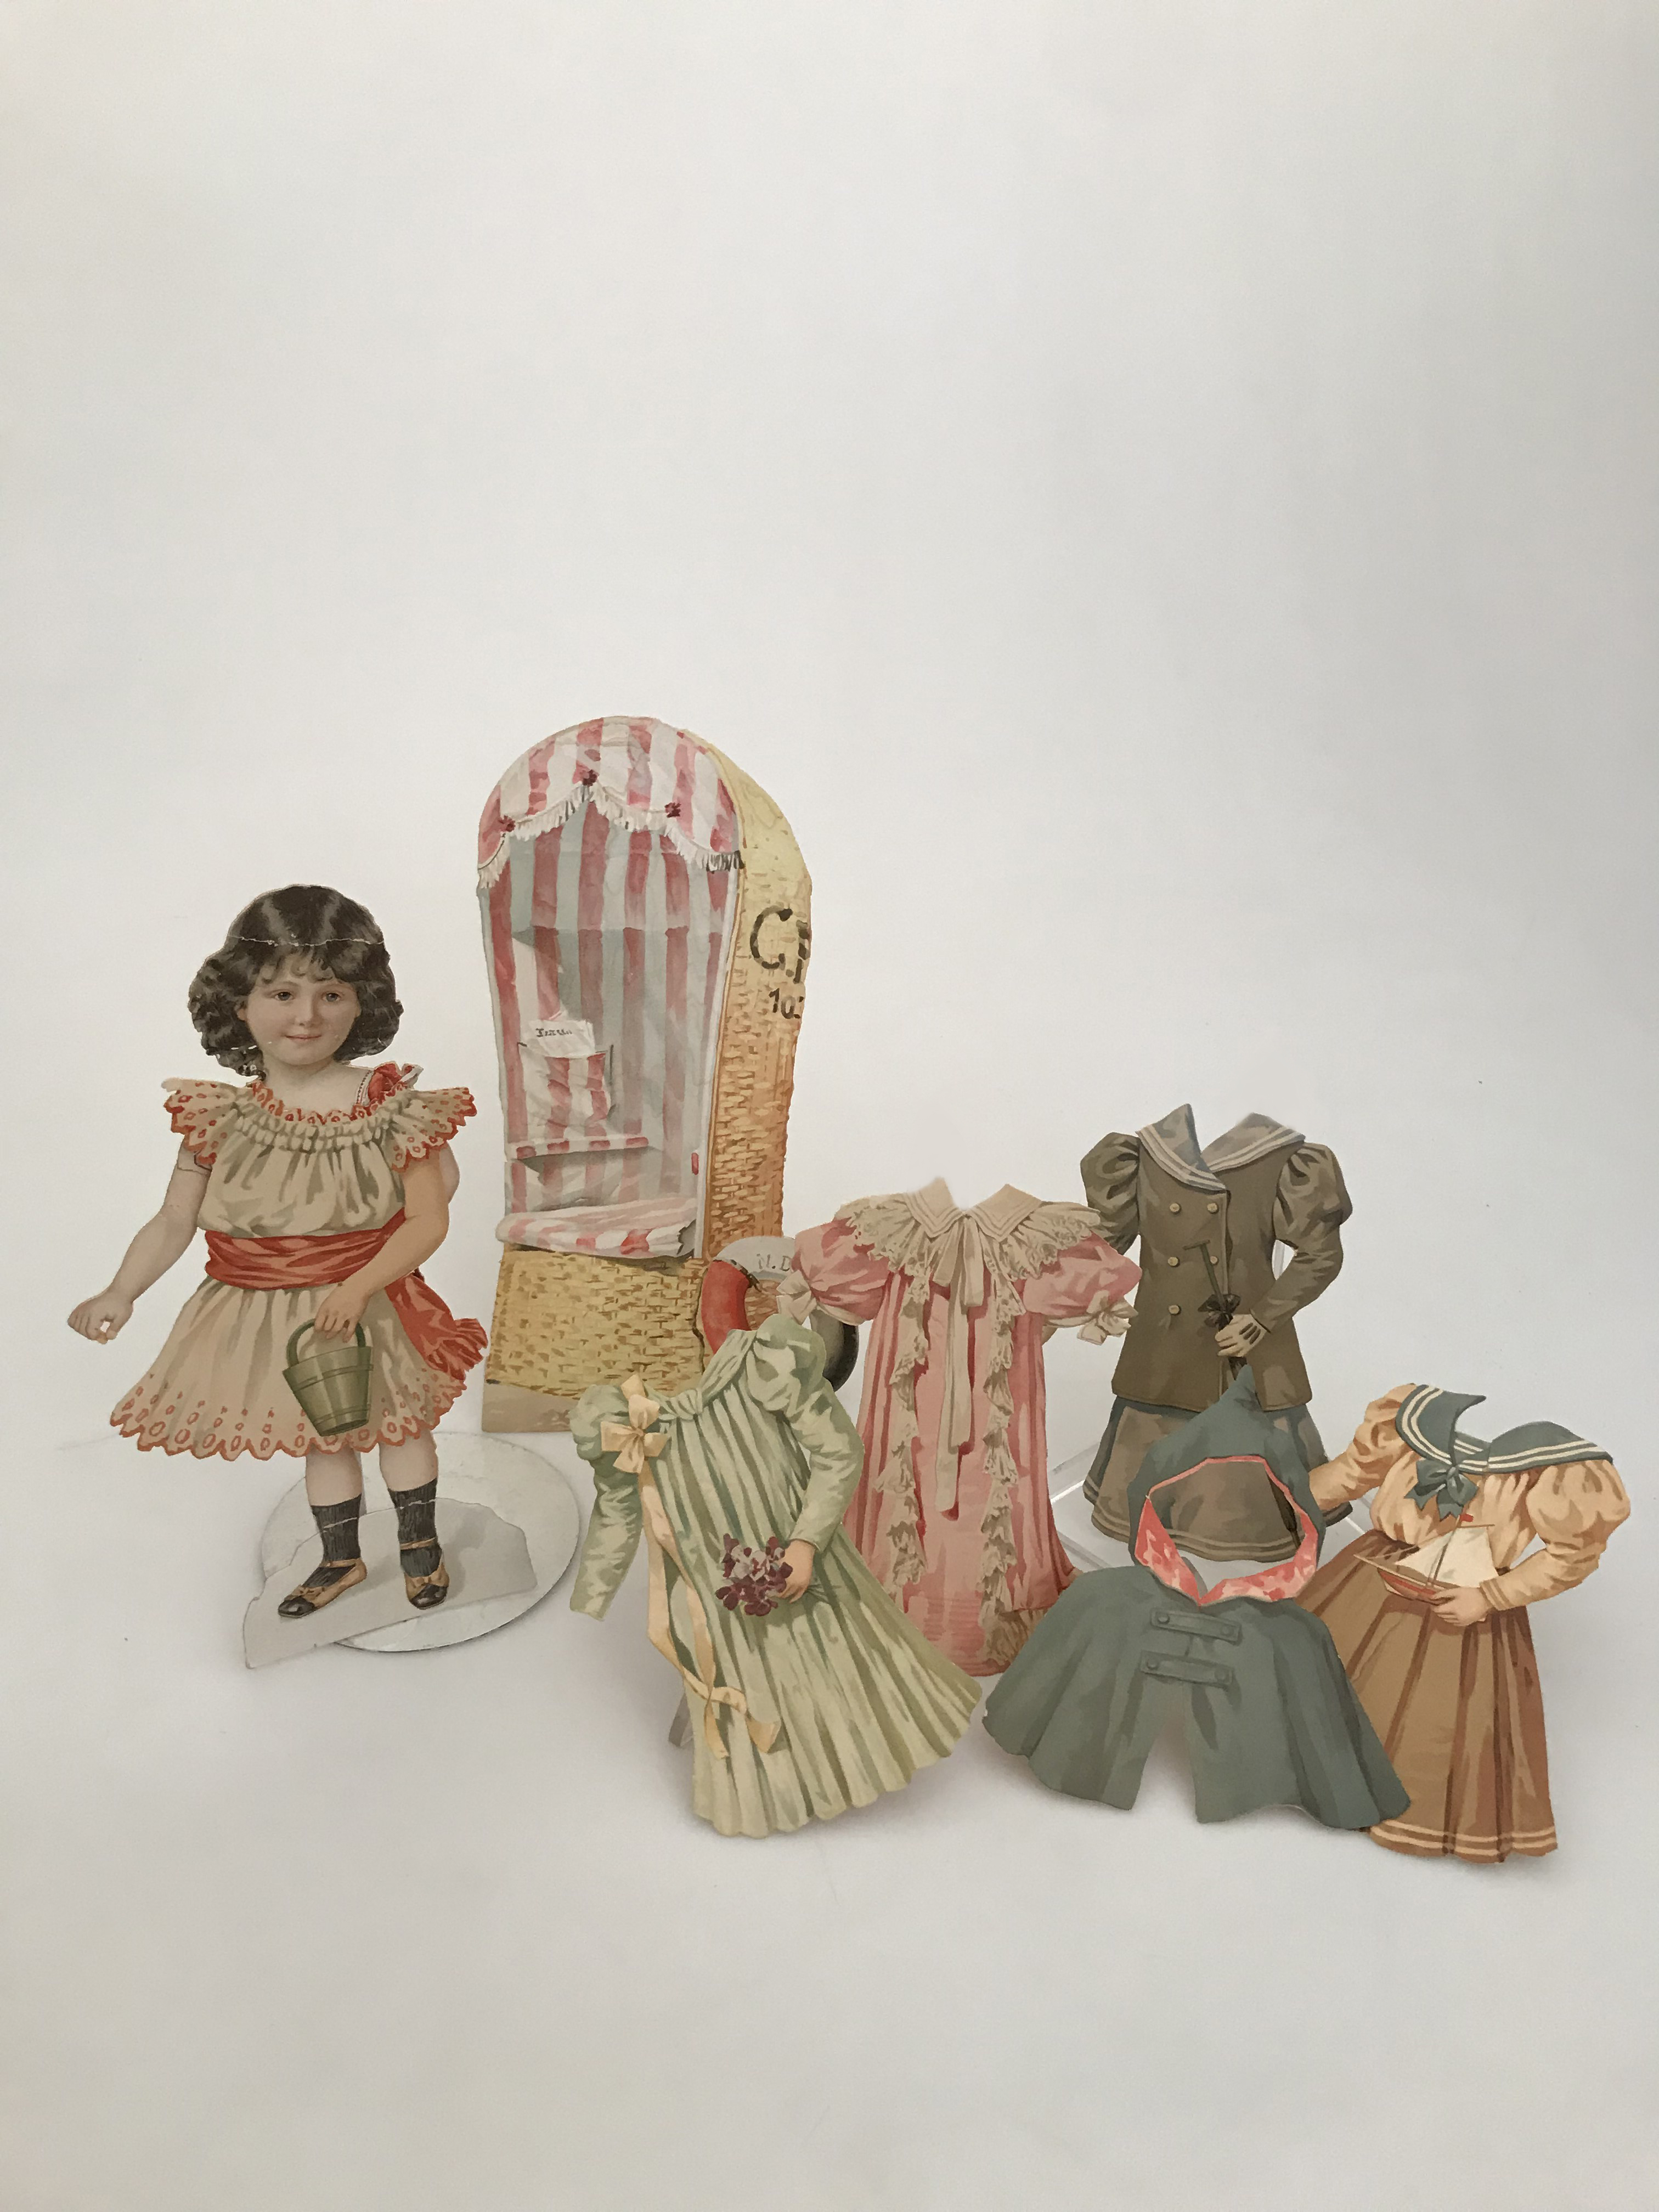 bambola con vestitini, in cartoncino, accessori ludici - area inglese (inizio XX secolo)